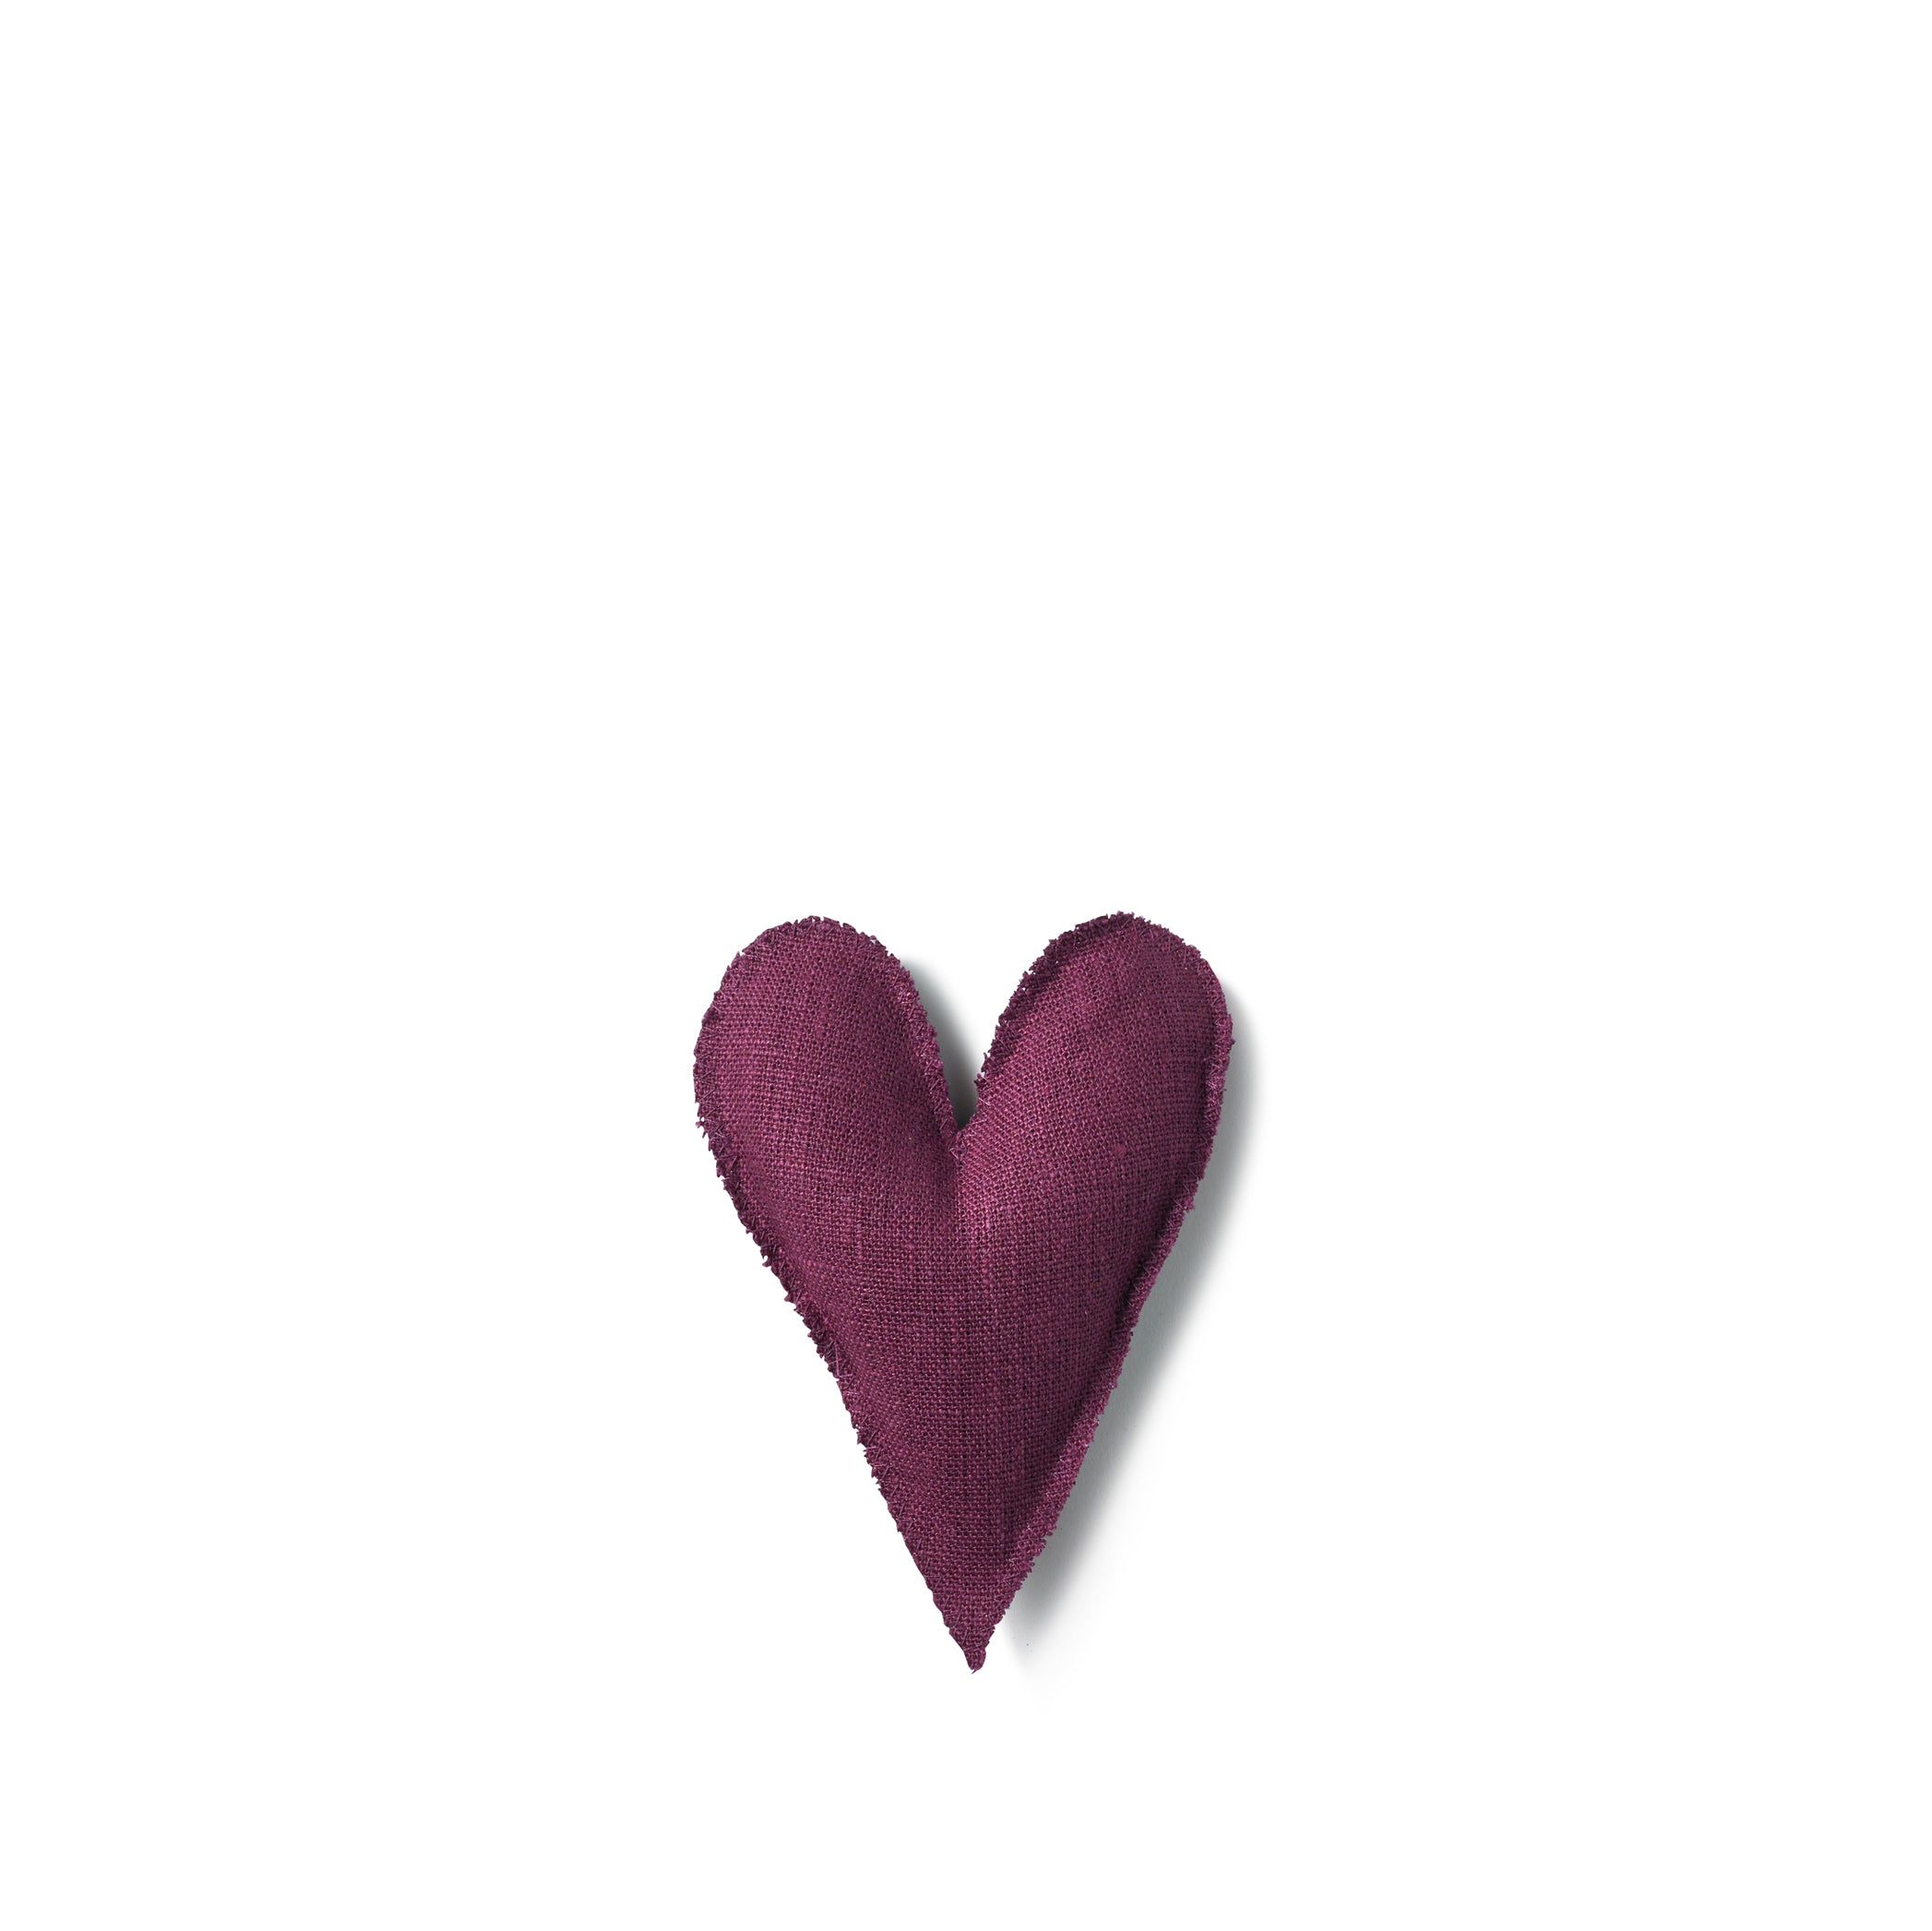 Lavender Heart in Purple